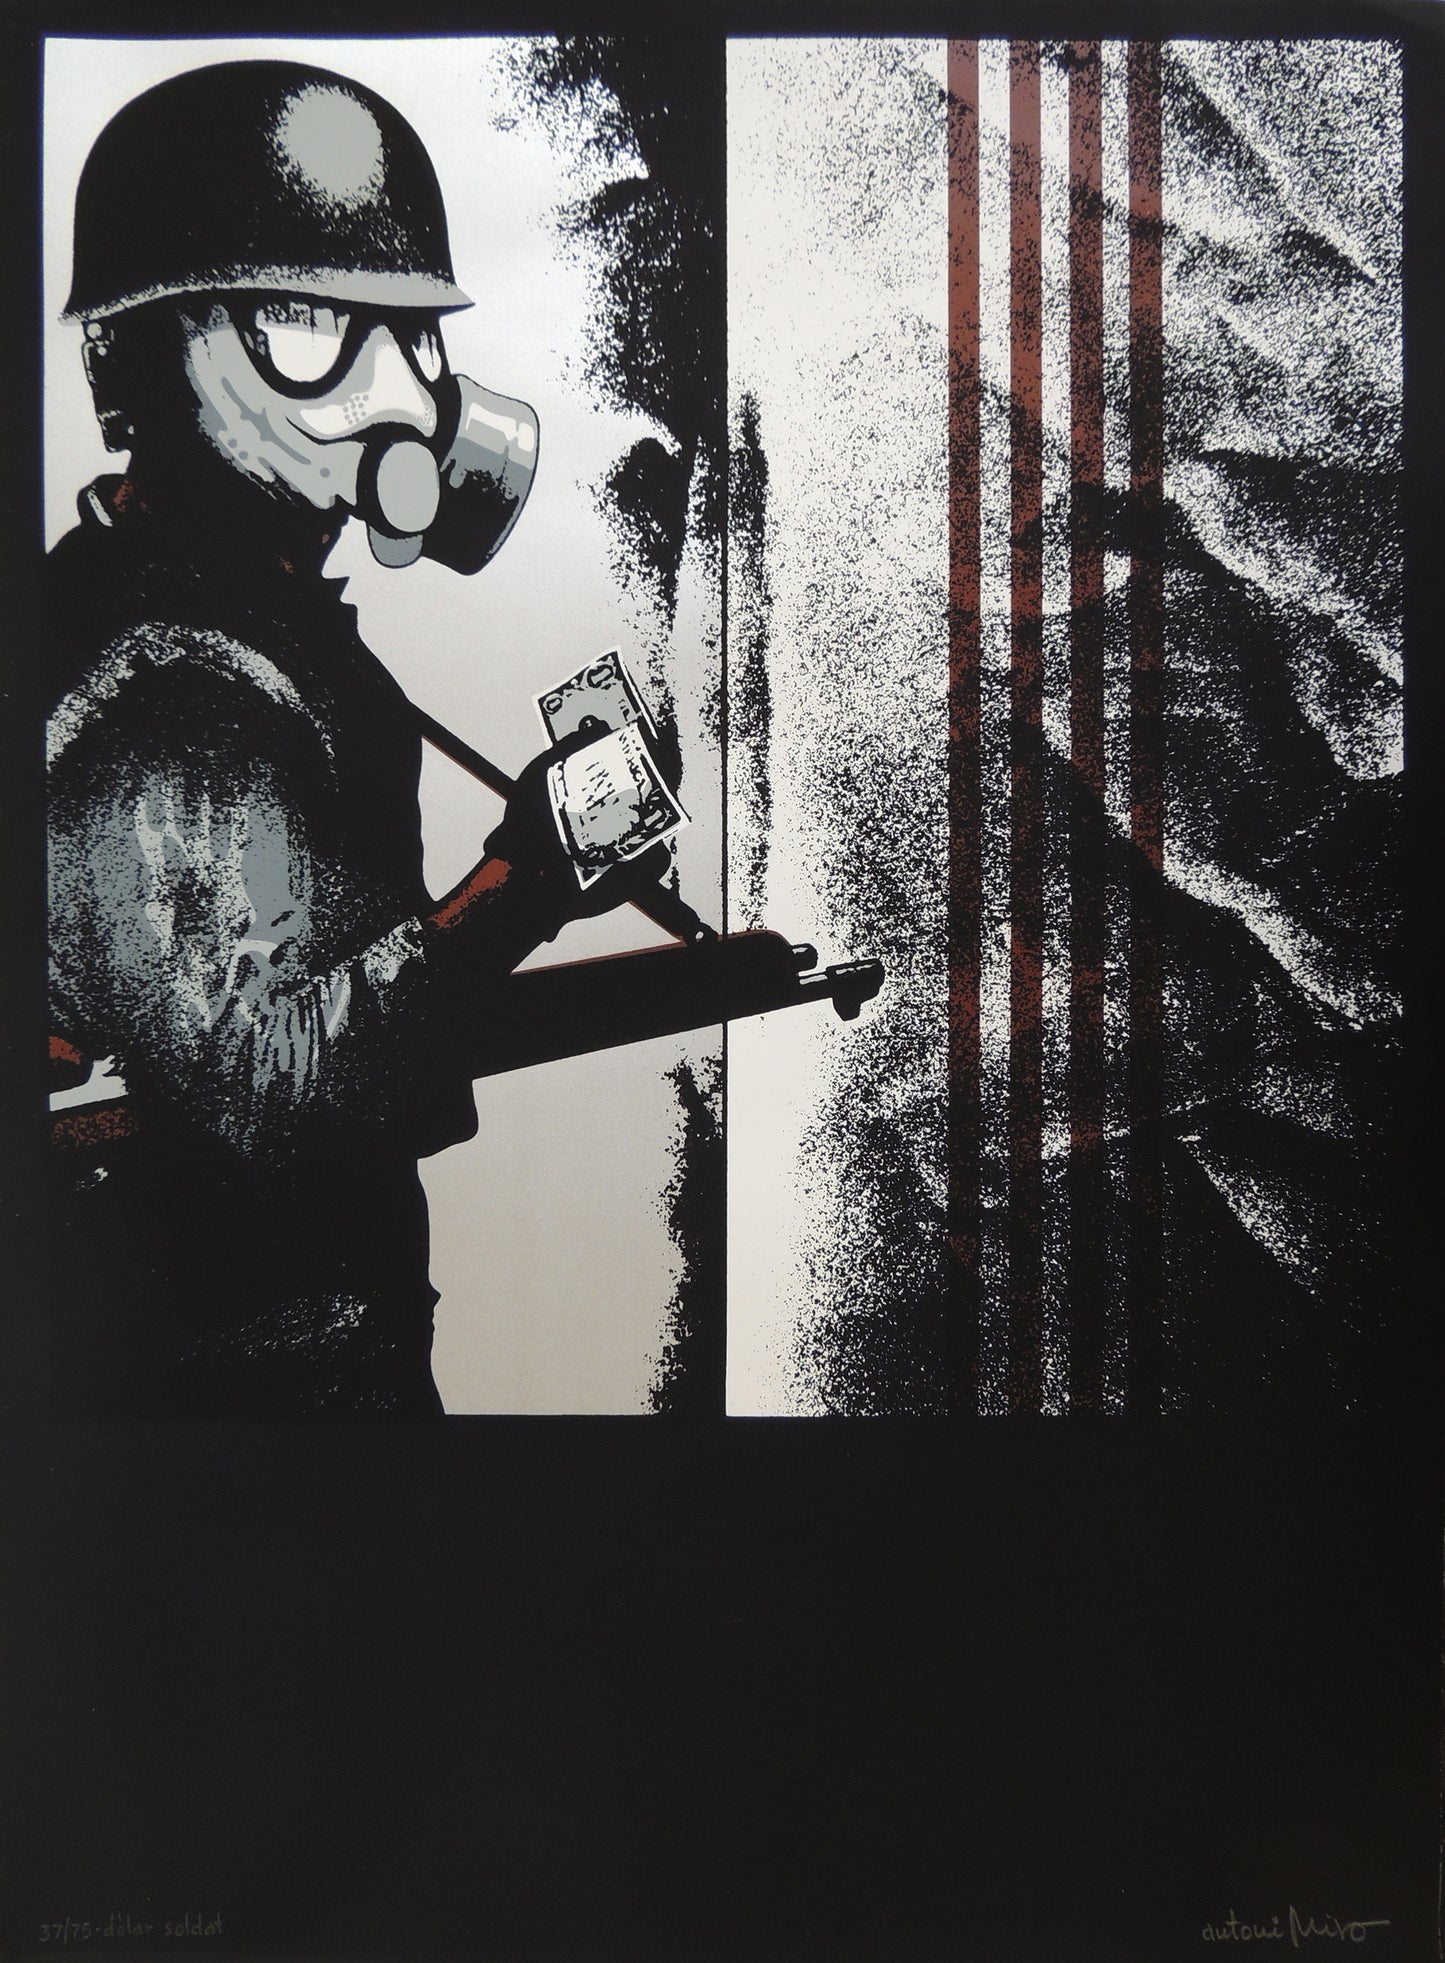 Serigrafía de edición limitada arte contemporáneo Antoni Miró Serie Dólar Gaudifond